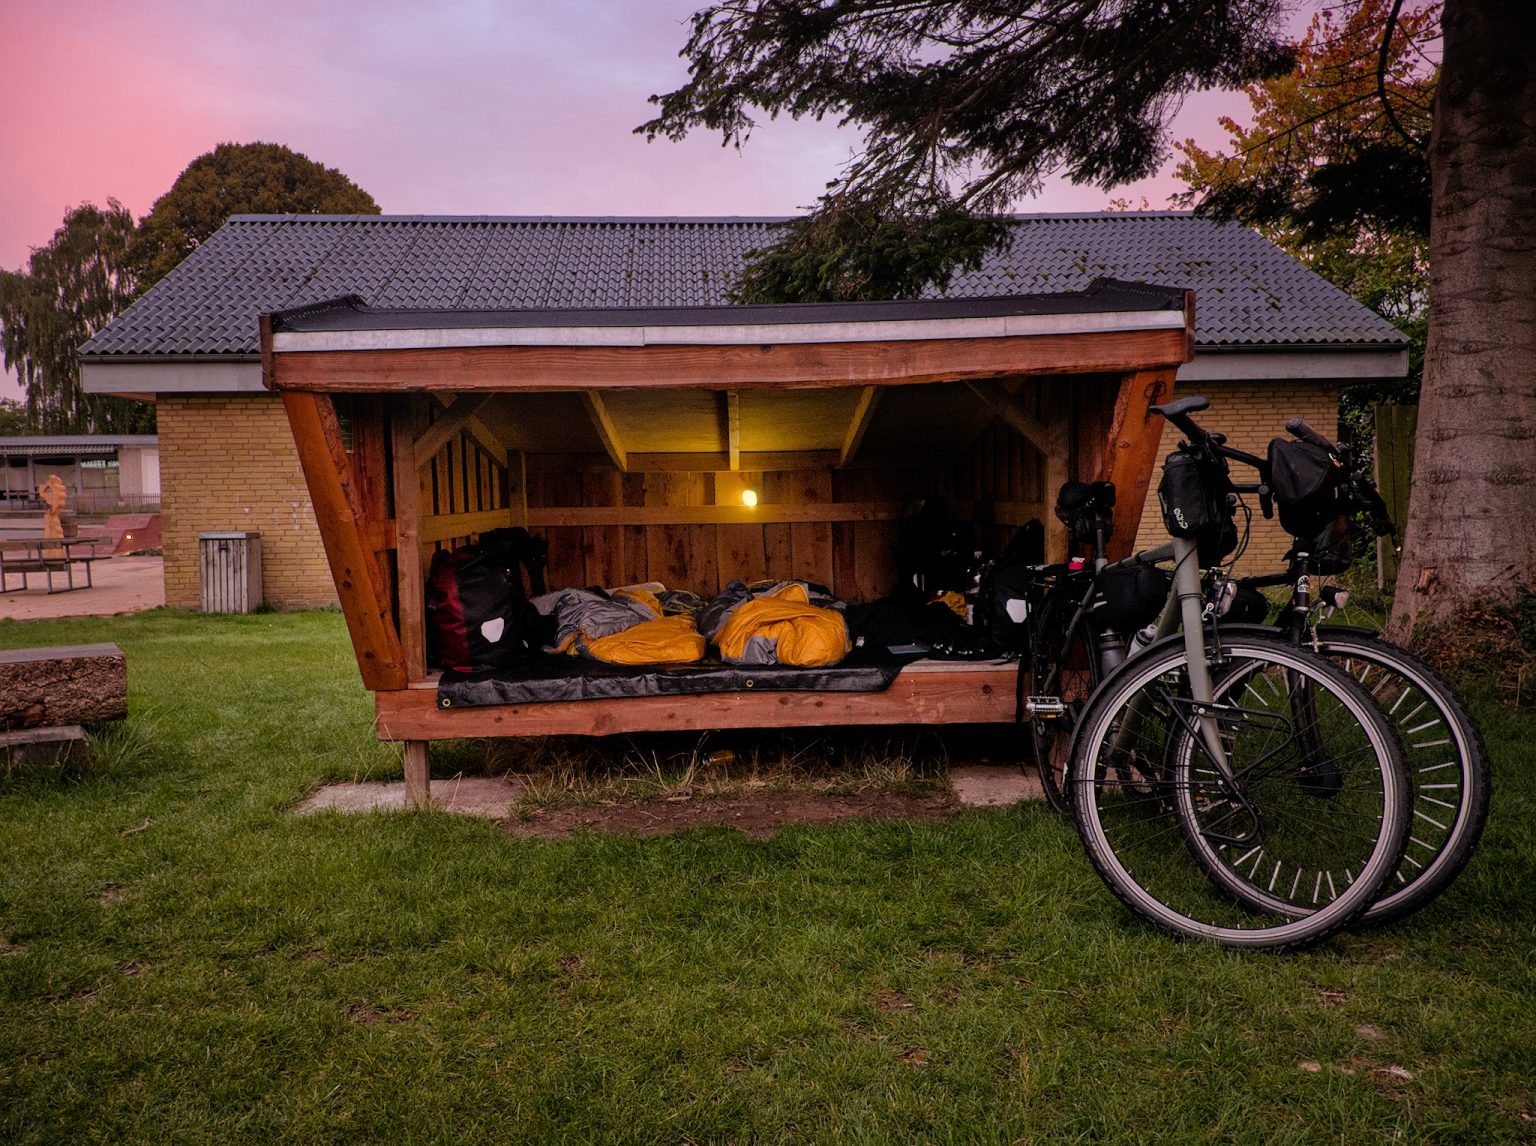 Dänemark - Mit dem Fahrrad von Shelter zu Shelter | 14qm